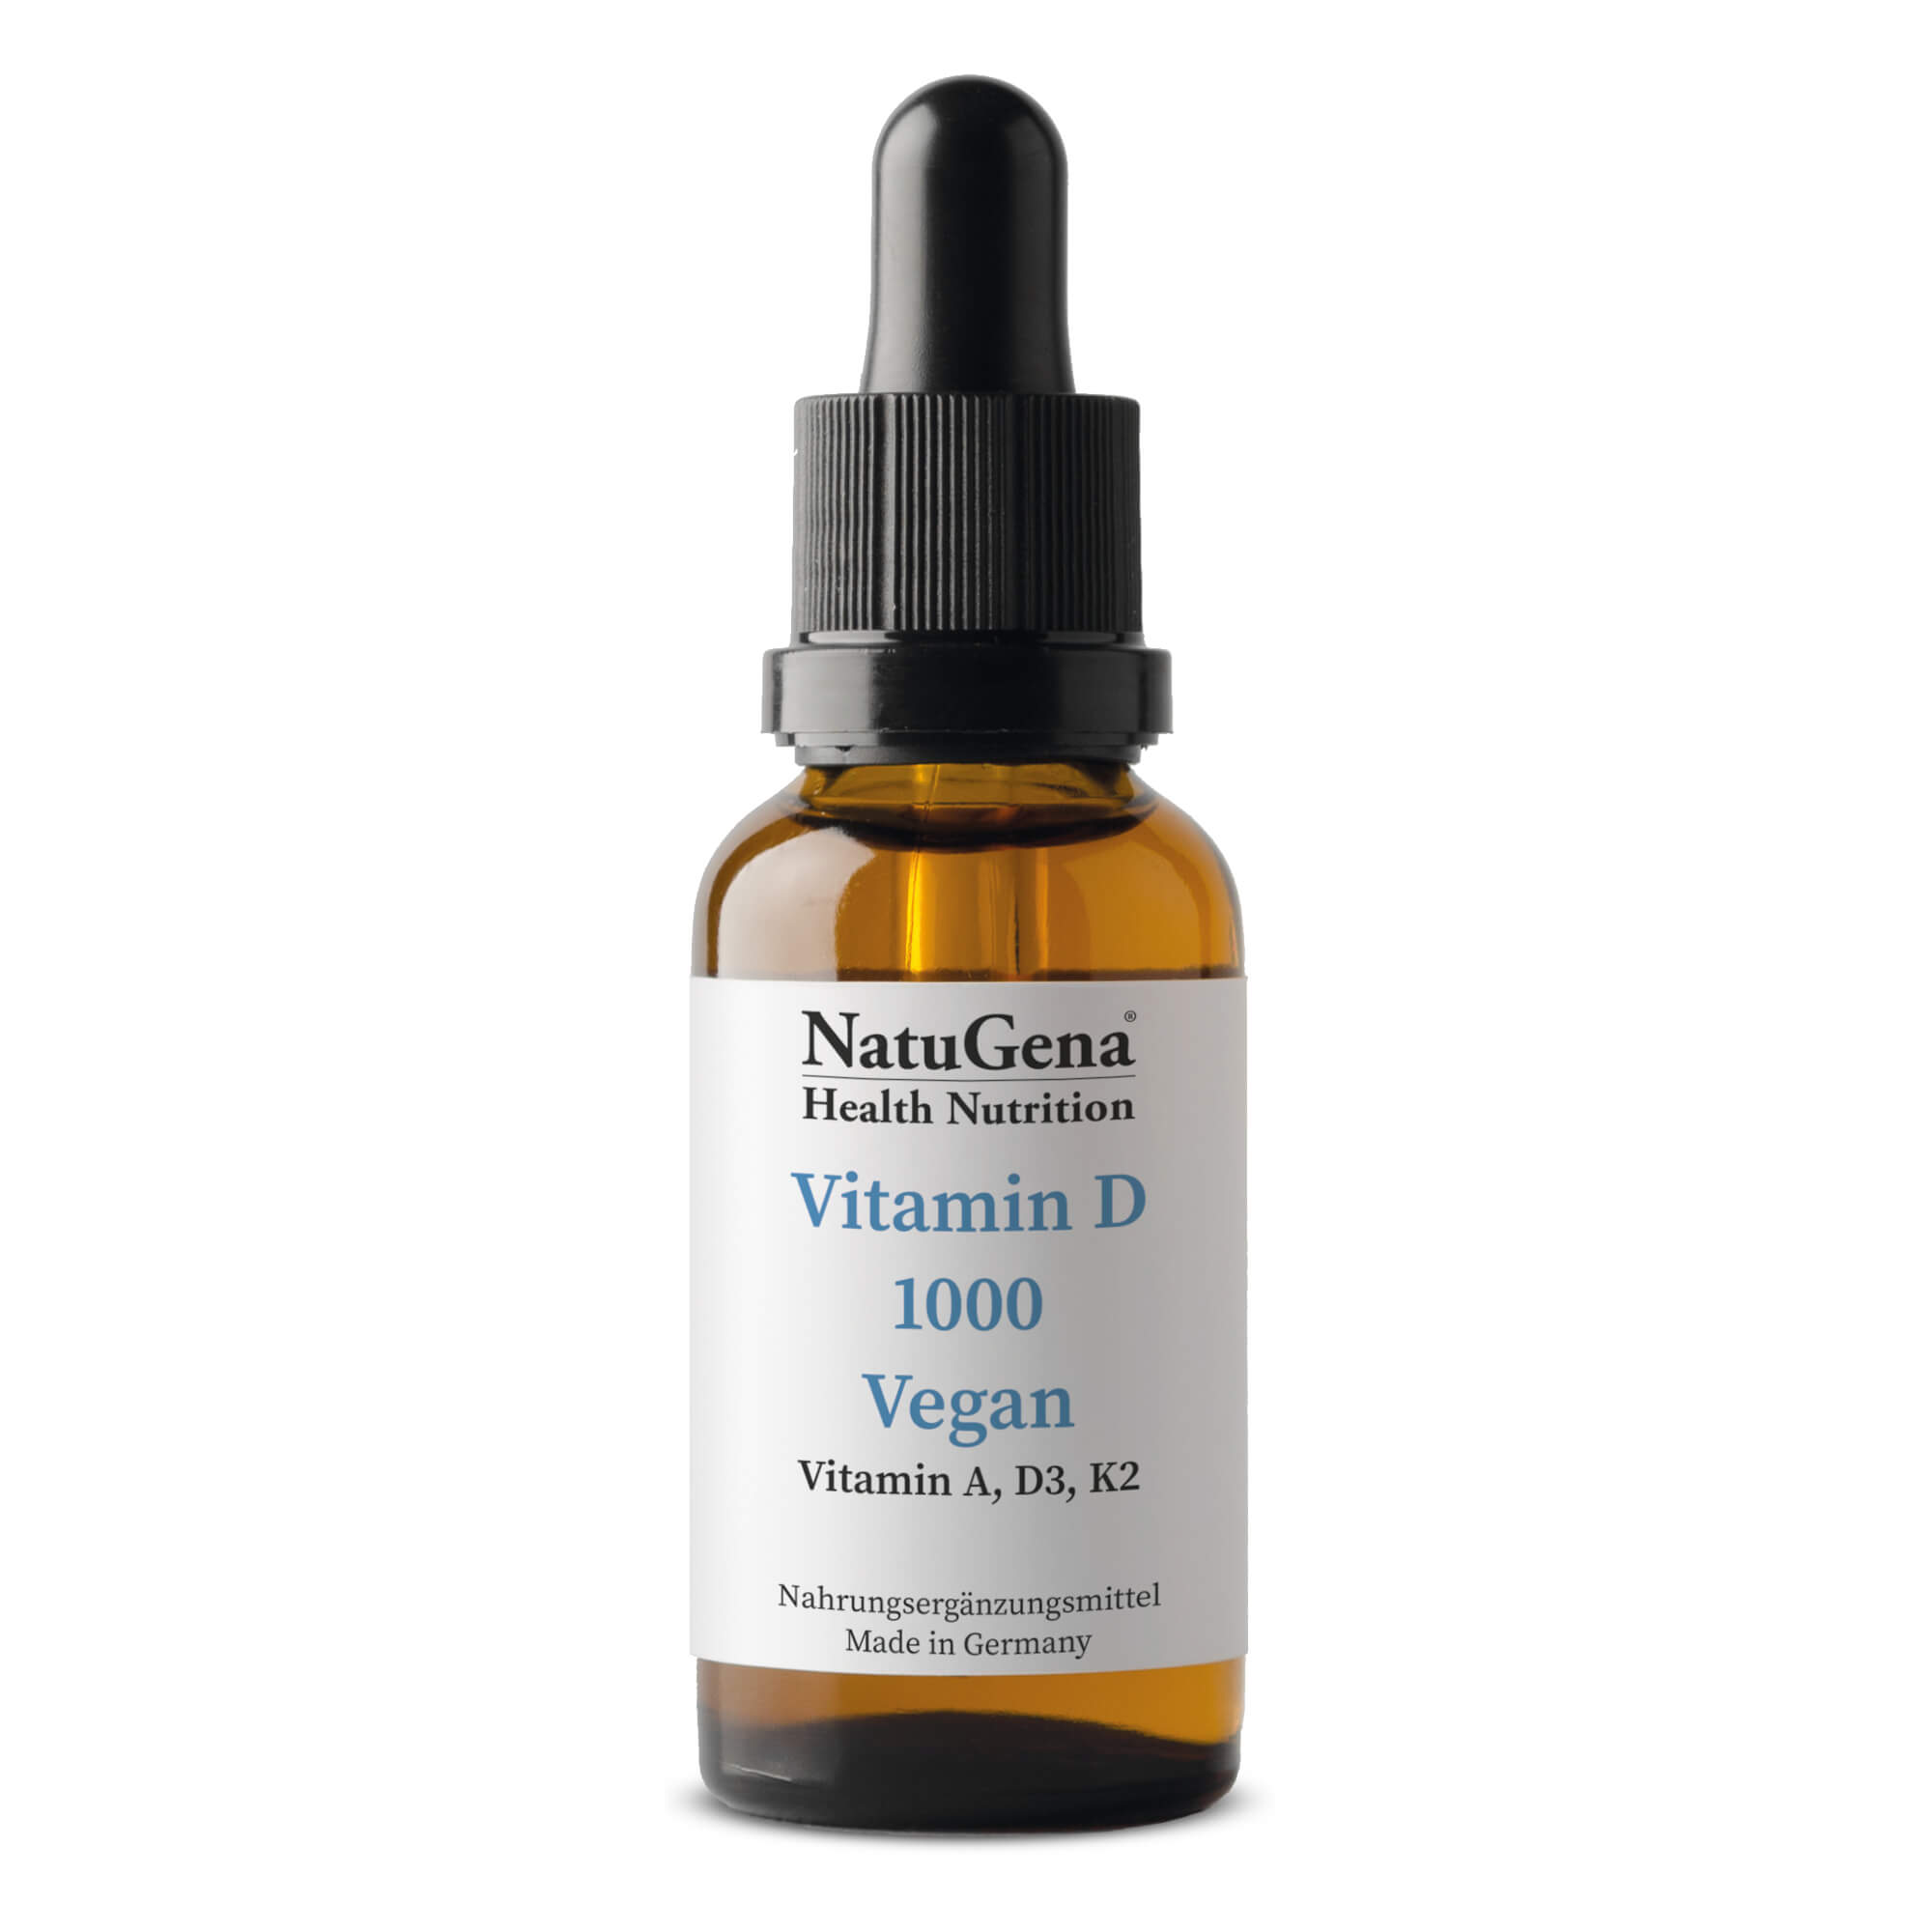 NatuGena Vitamin D 1000 Vegan | 15ml | mit Vitamin D3, K2 & A